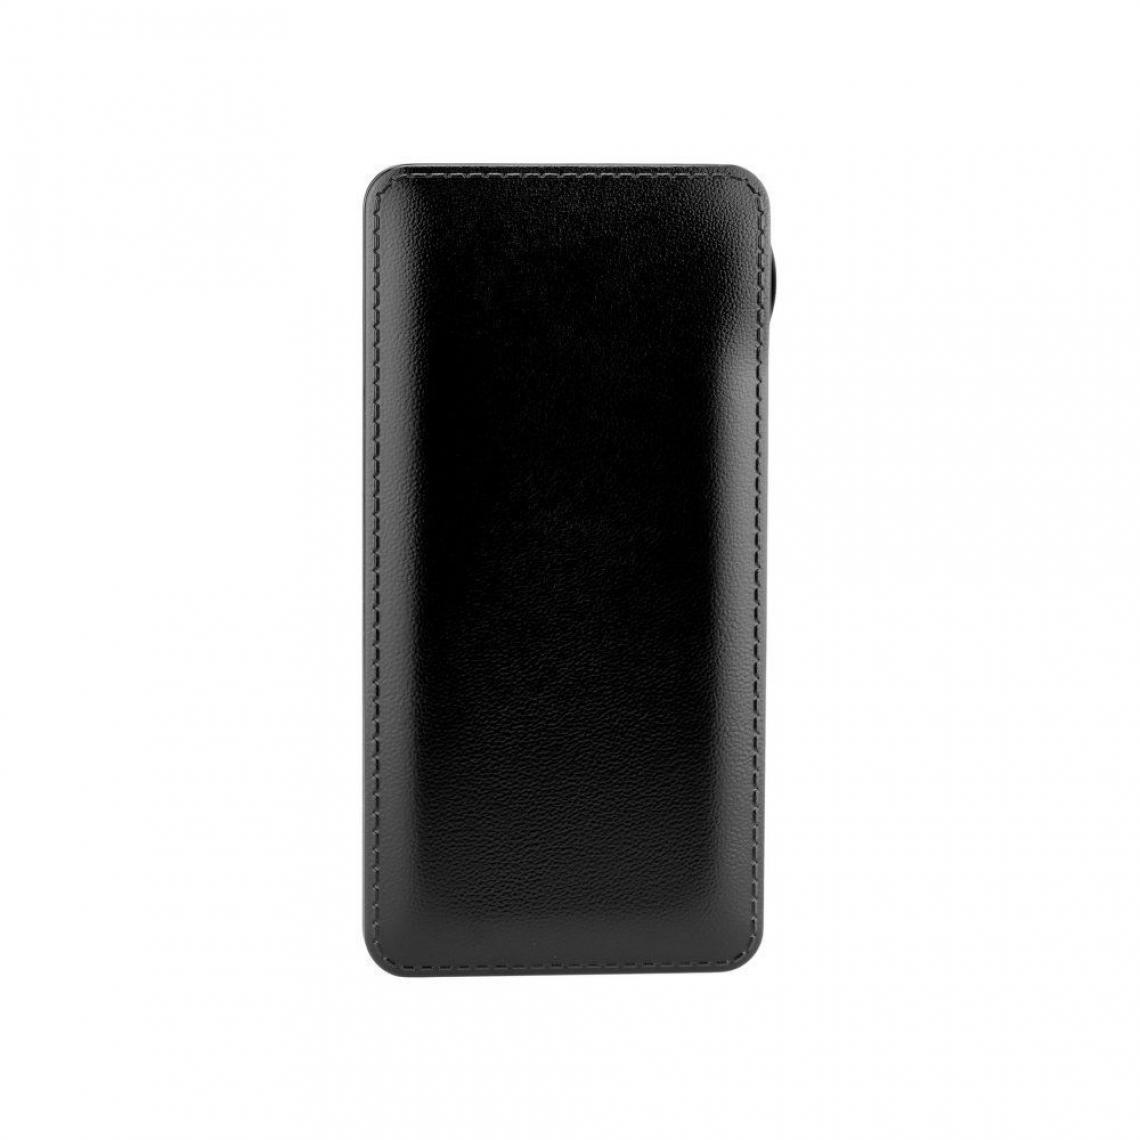 Ozzzo - Chargeur batterie externe 20000 mAh powerbank ozzzo noir pour Cubot J9 - Autres accessoires smartphone